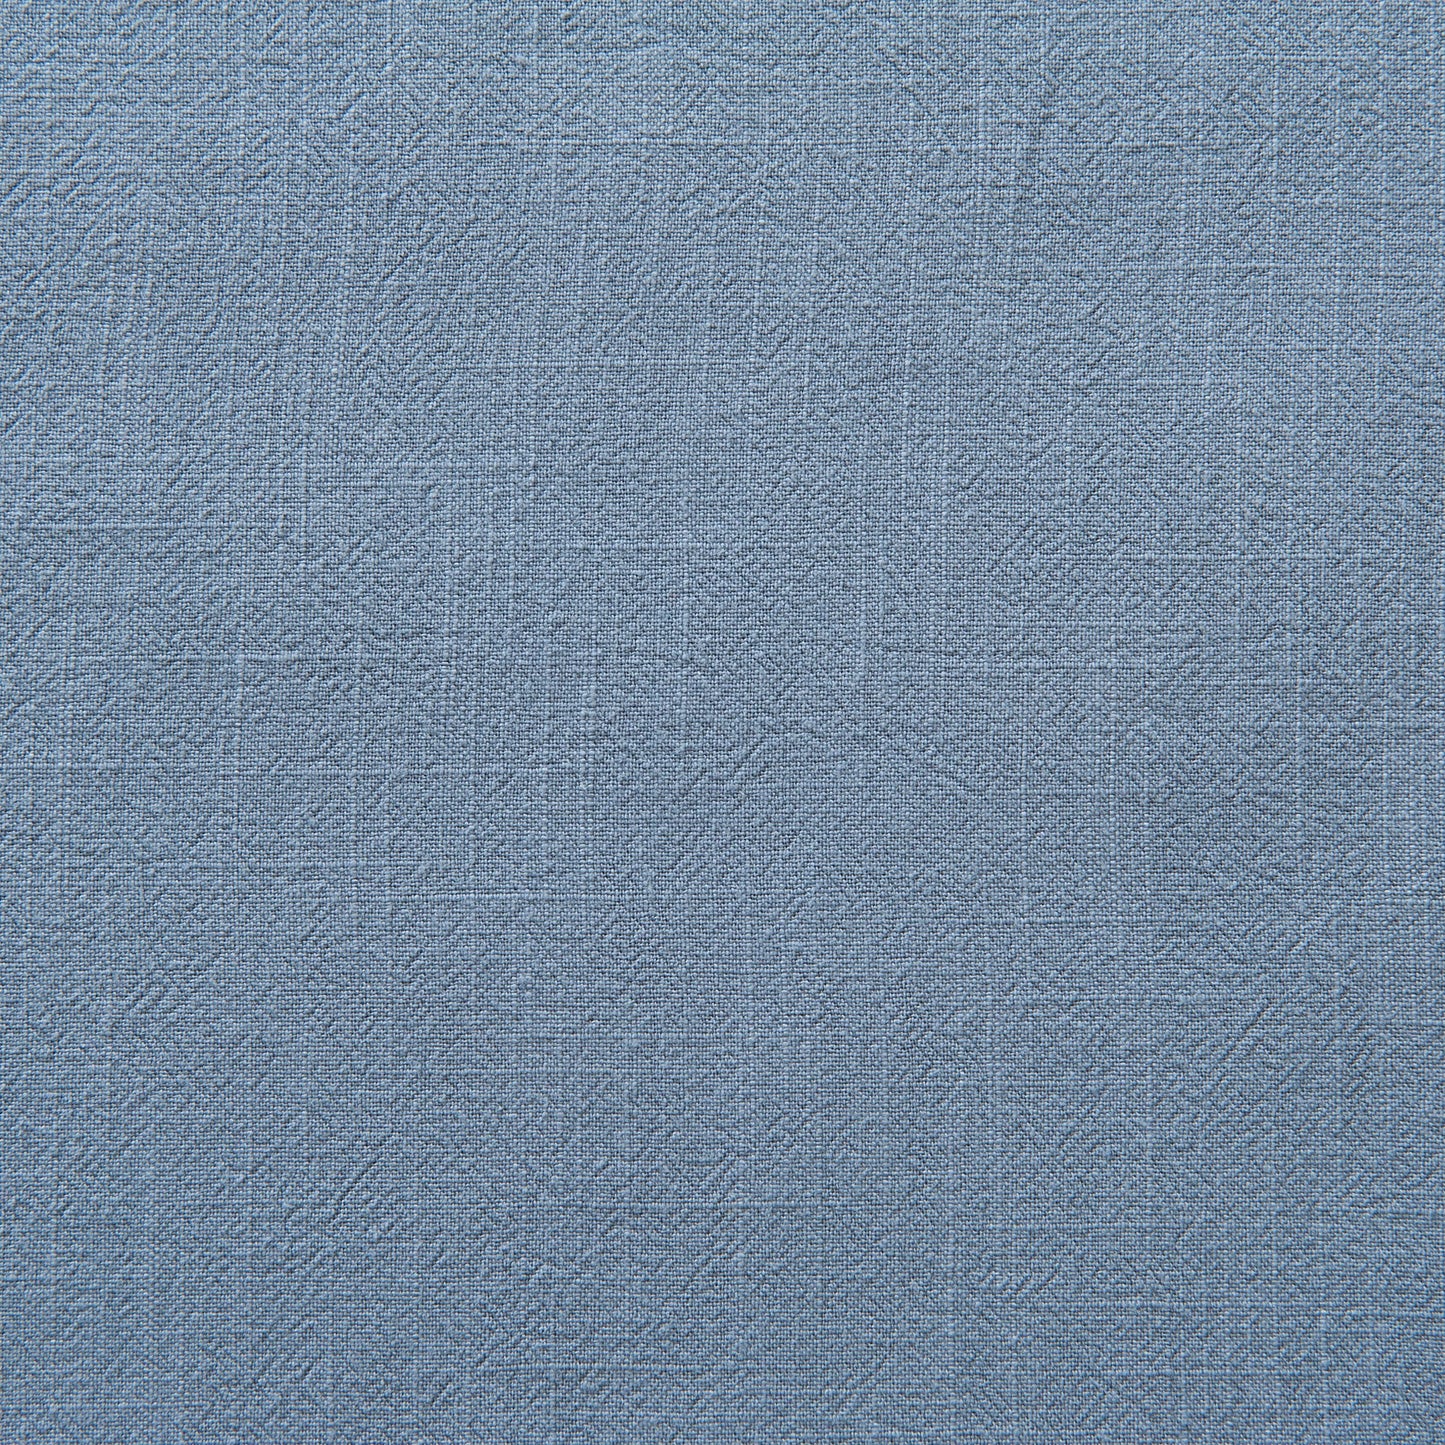 Viscose Linen in Light Blue - 90cm